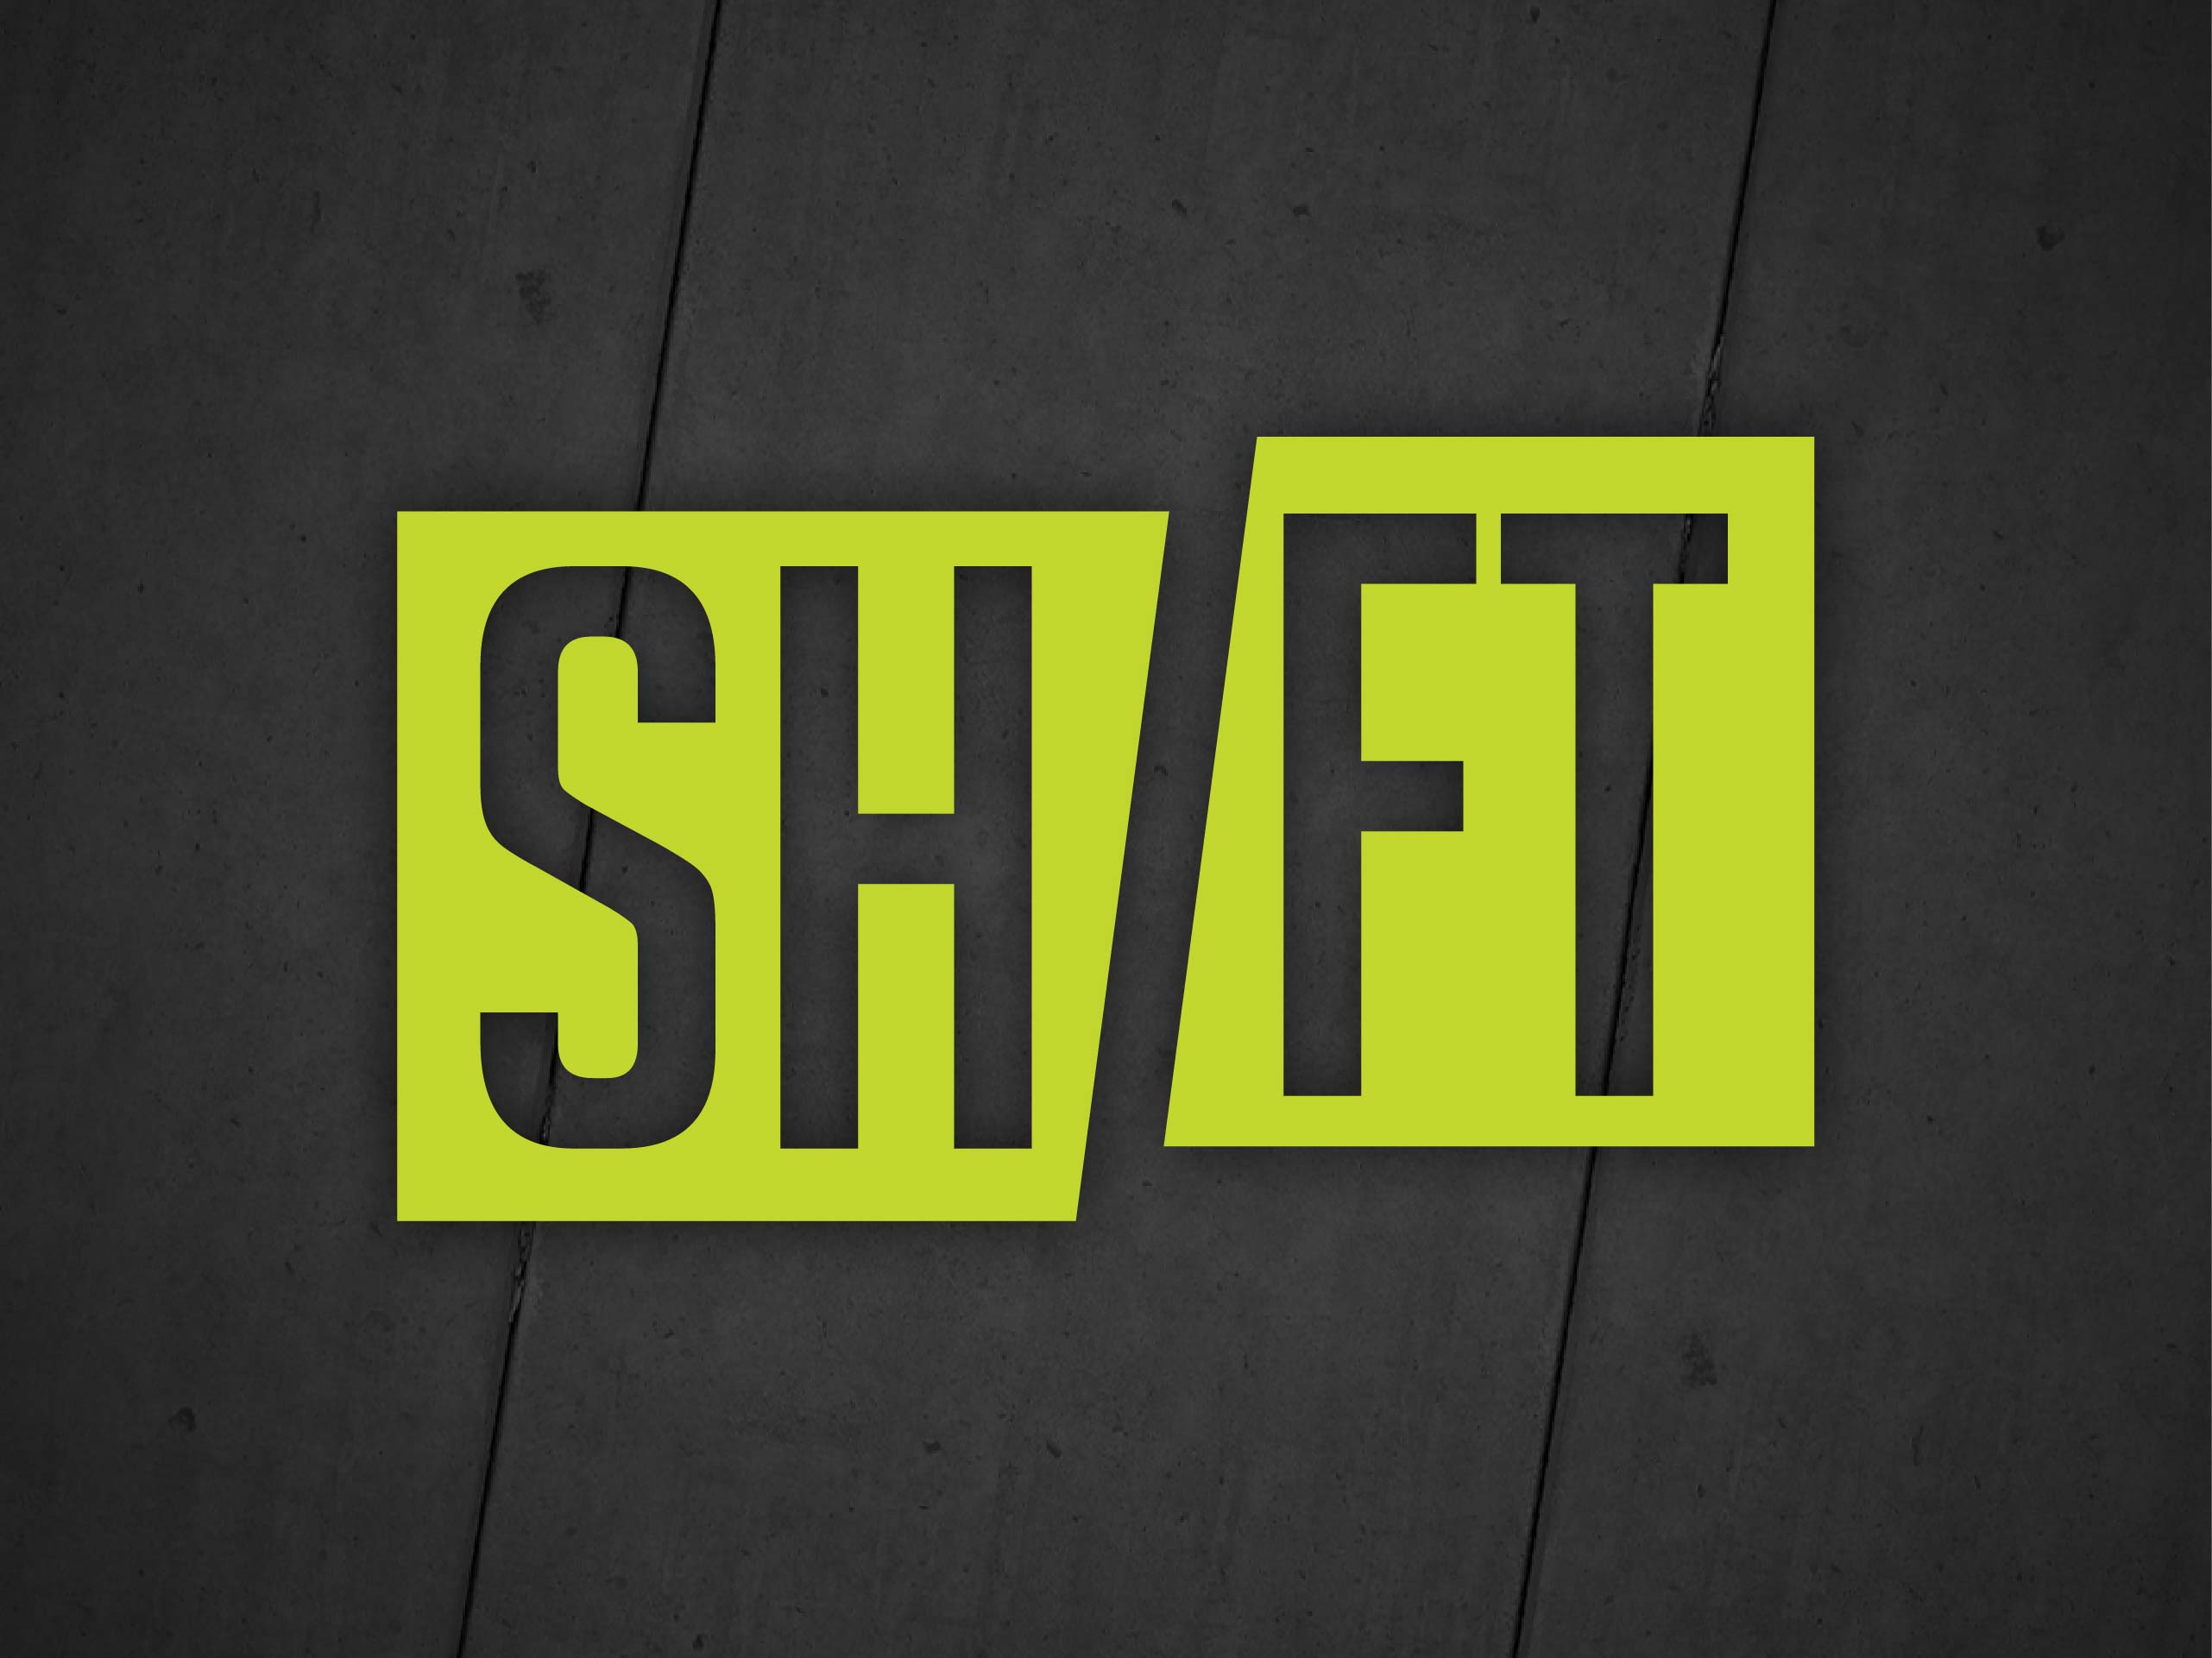 Shift (Part 4)